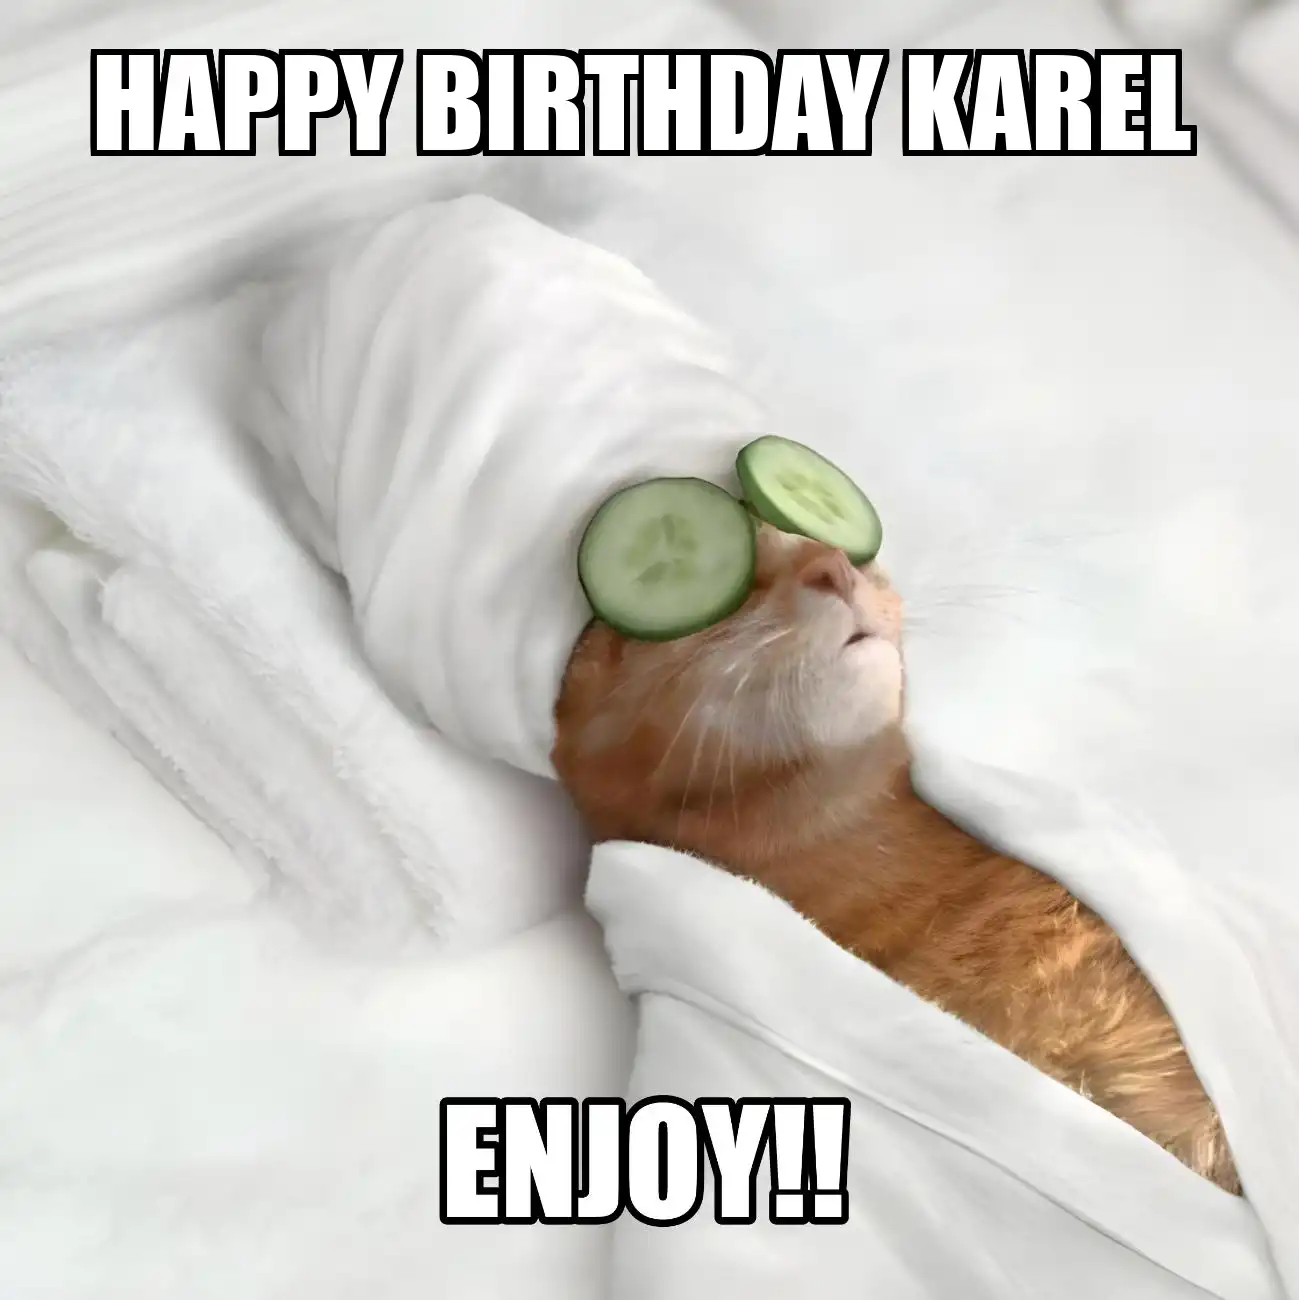 Happy Birthday Karel Enjoy Cat Meme